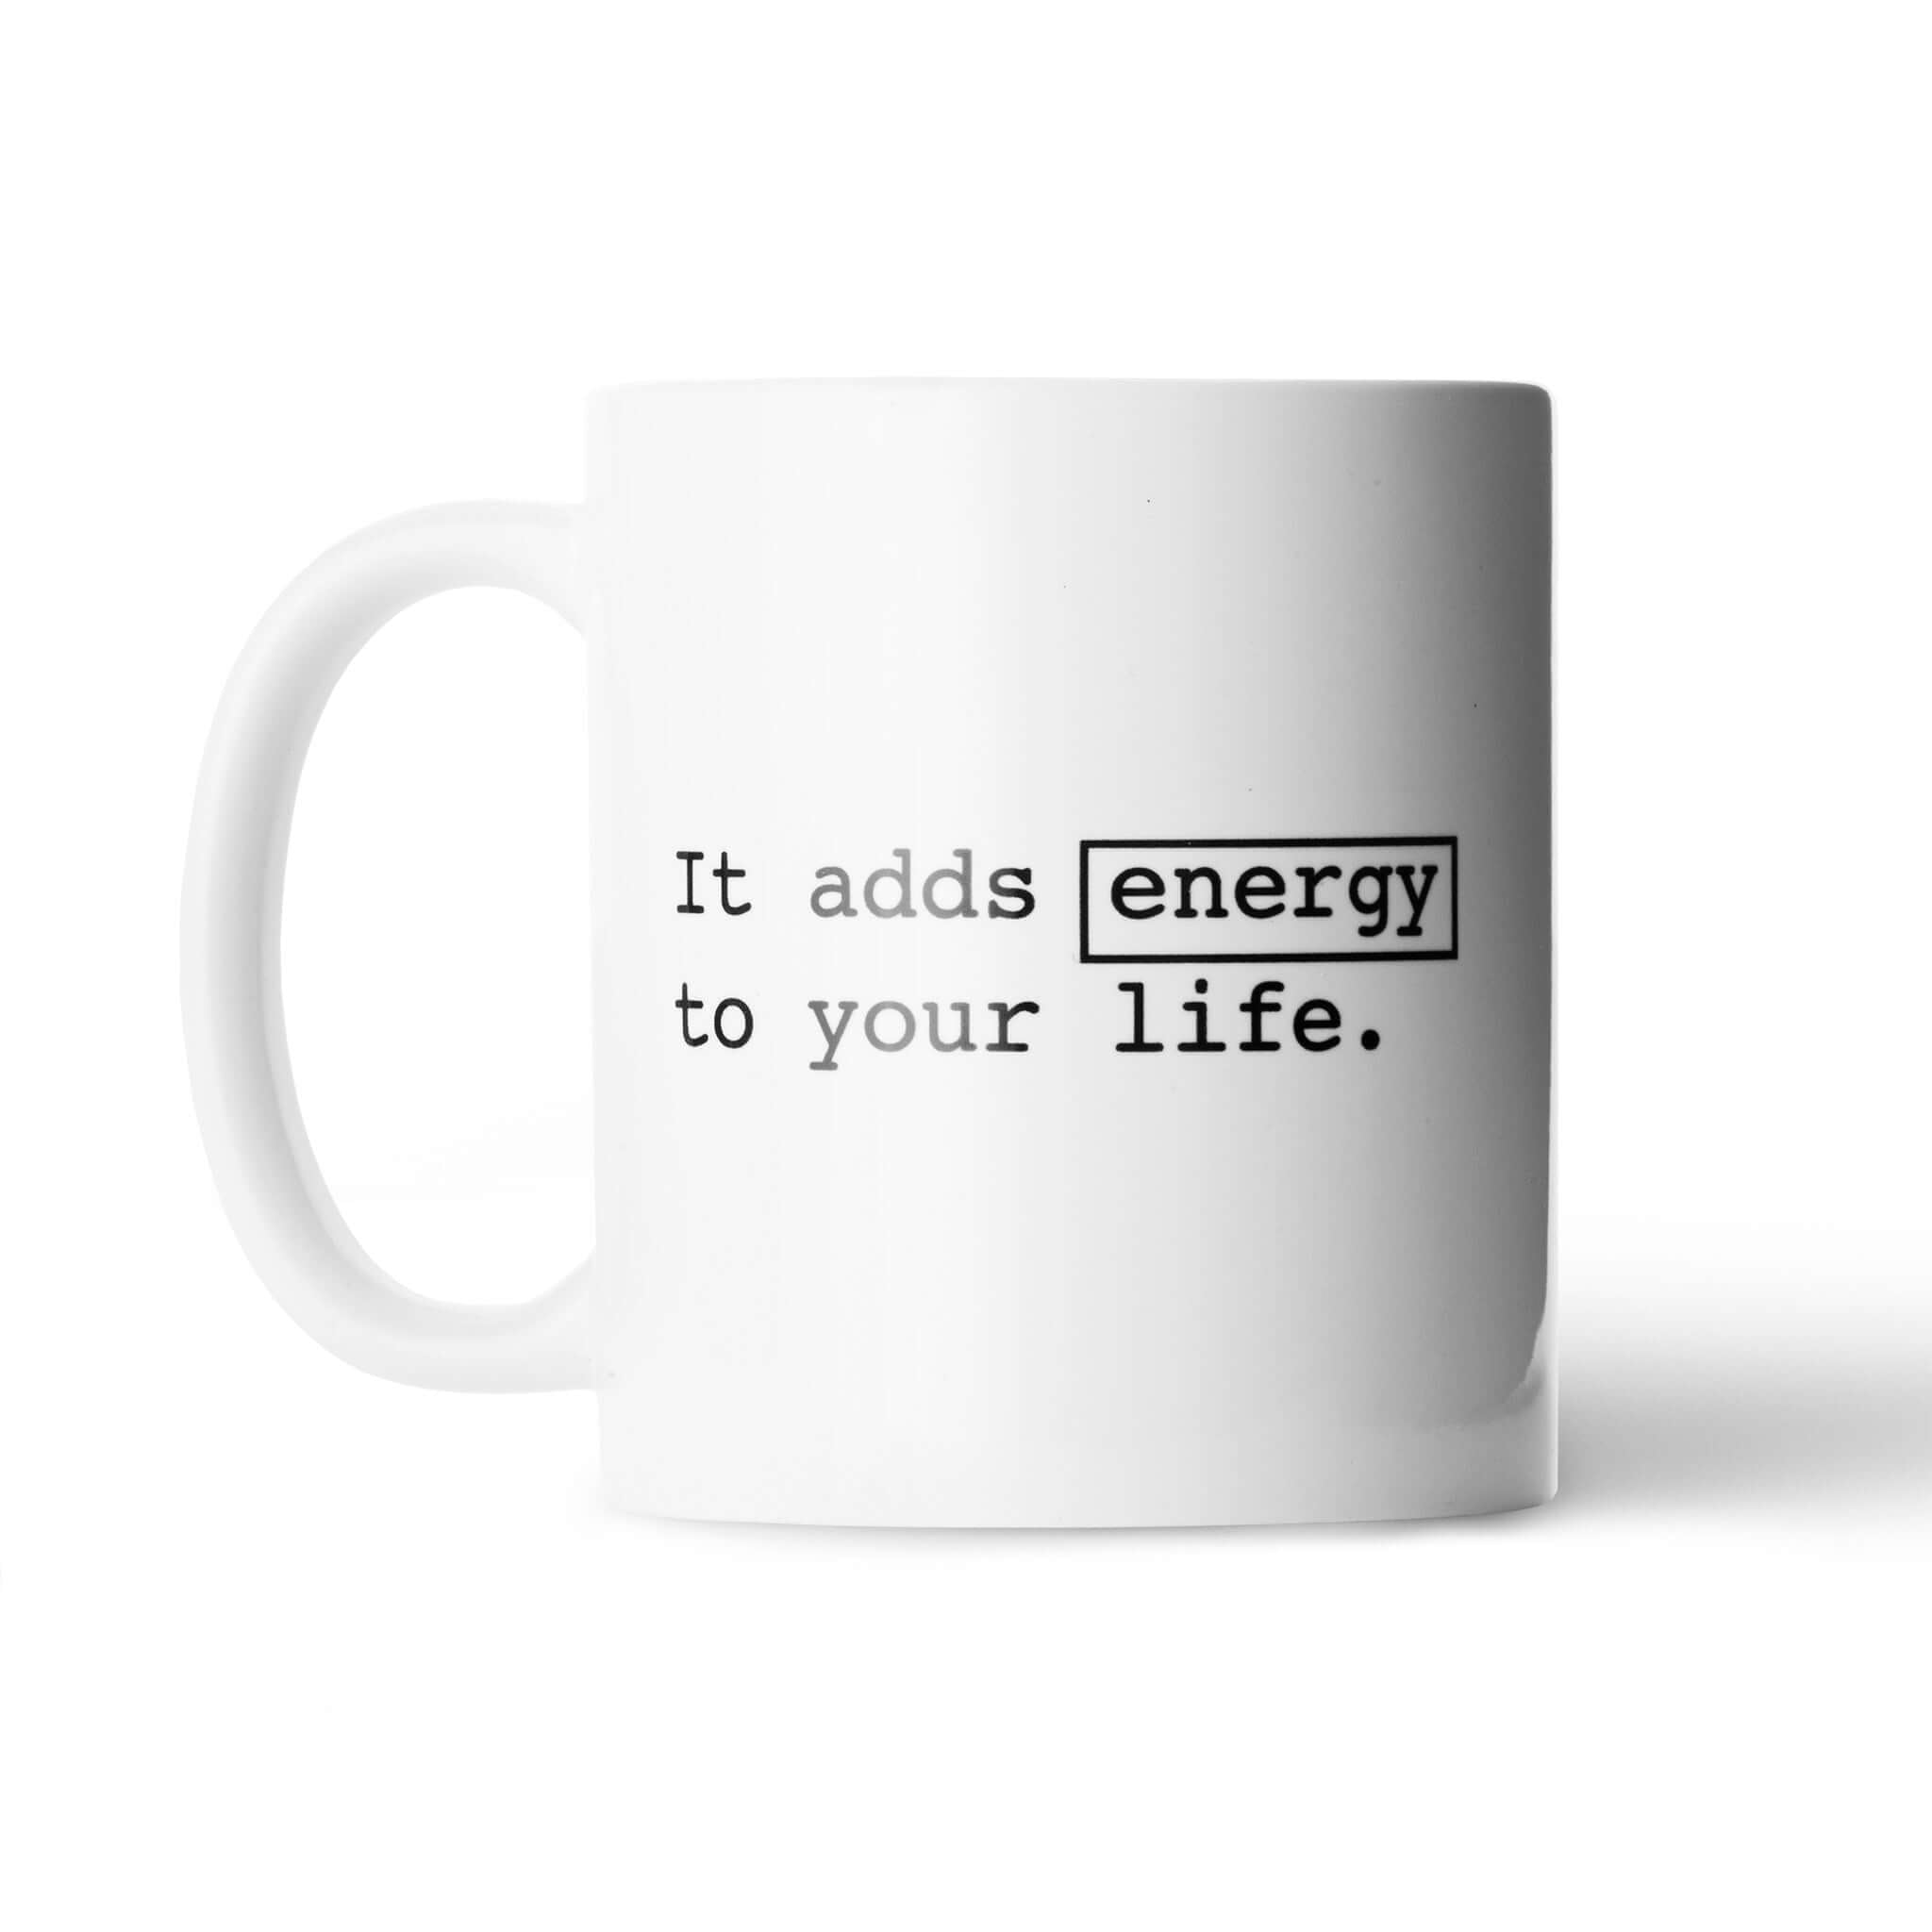 Mug-Ceramic-ItaddsEnergy-FaceD-Accessories || Tazza-Caramica-ItaddsEnergy-FaceD-Accessori